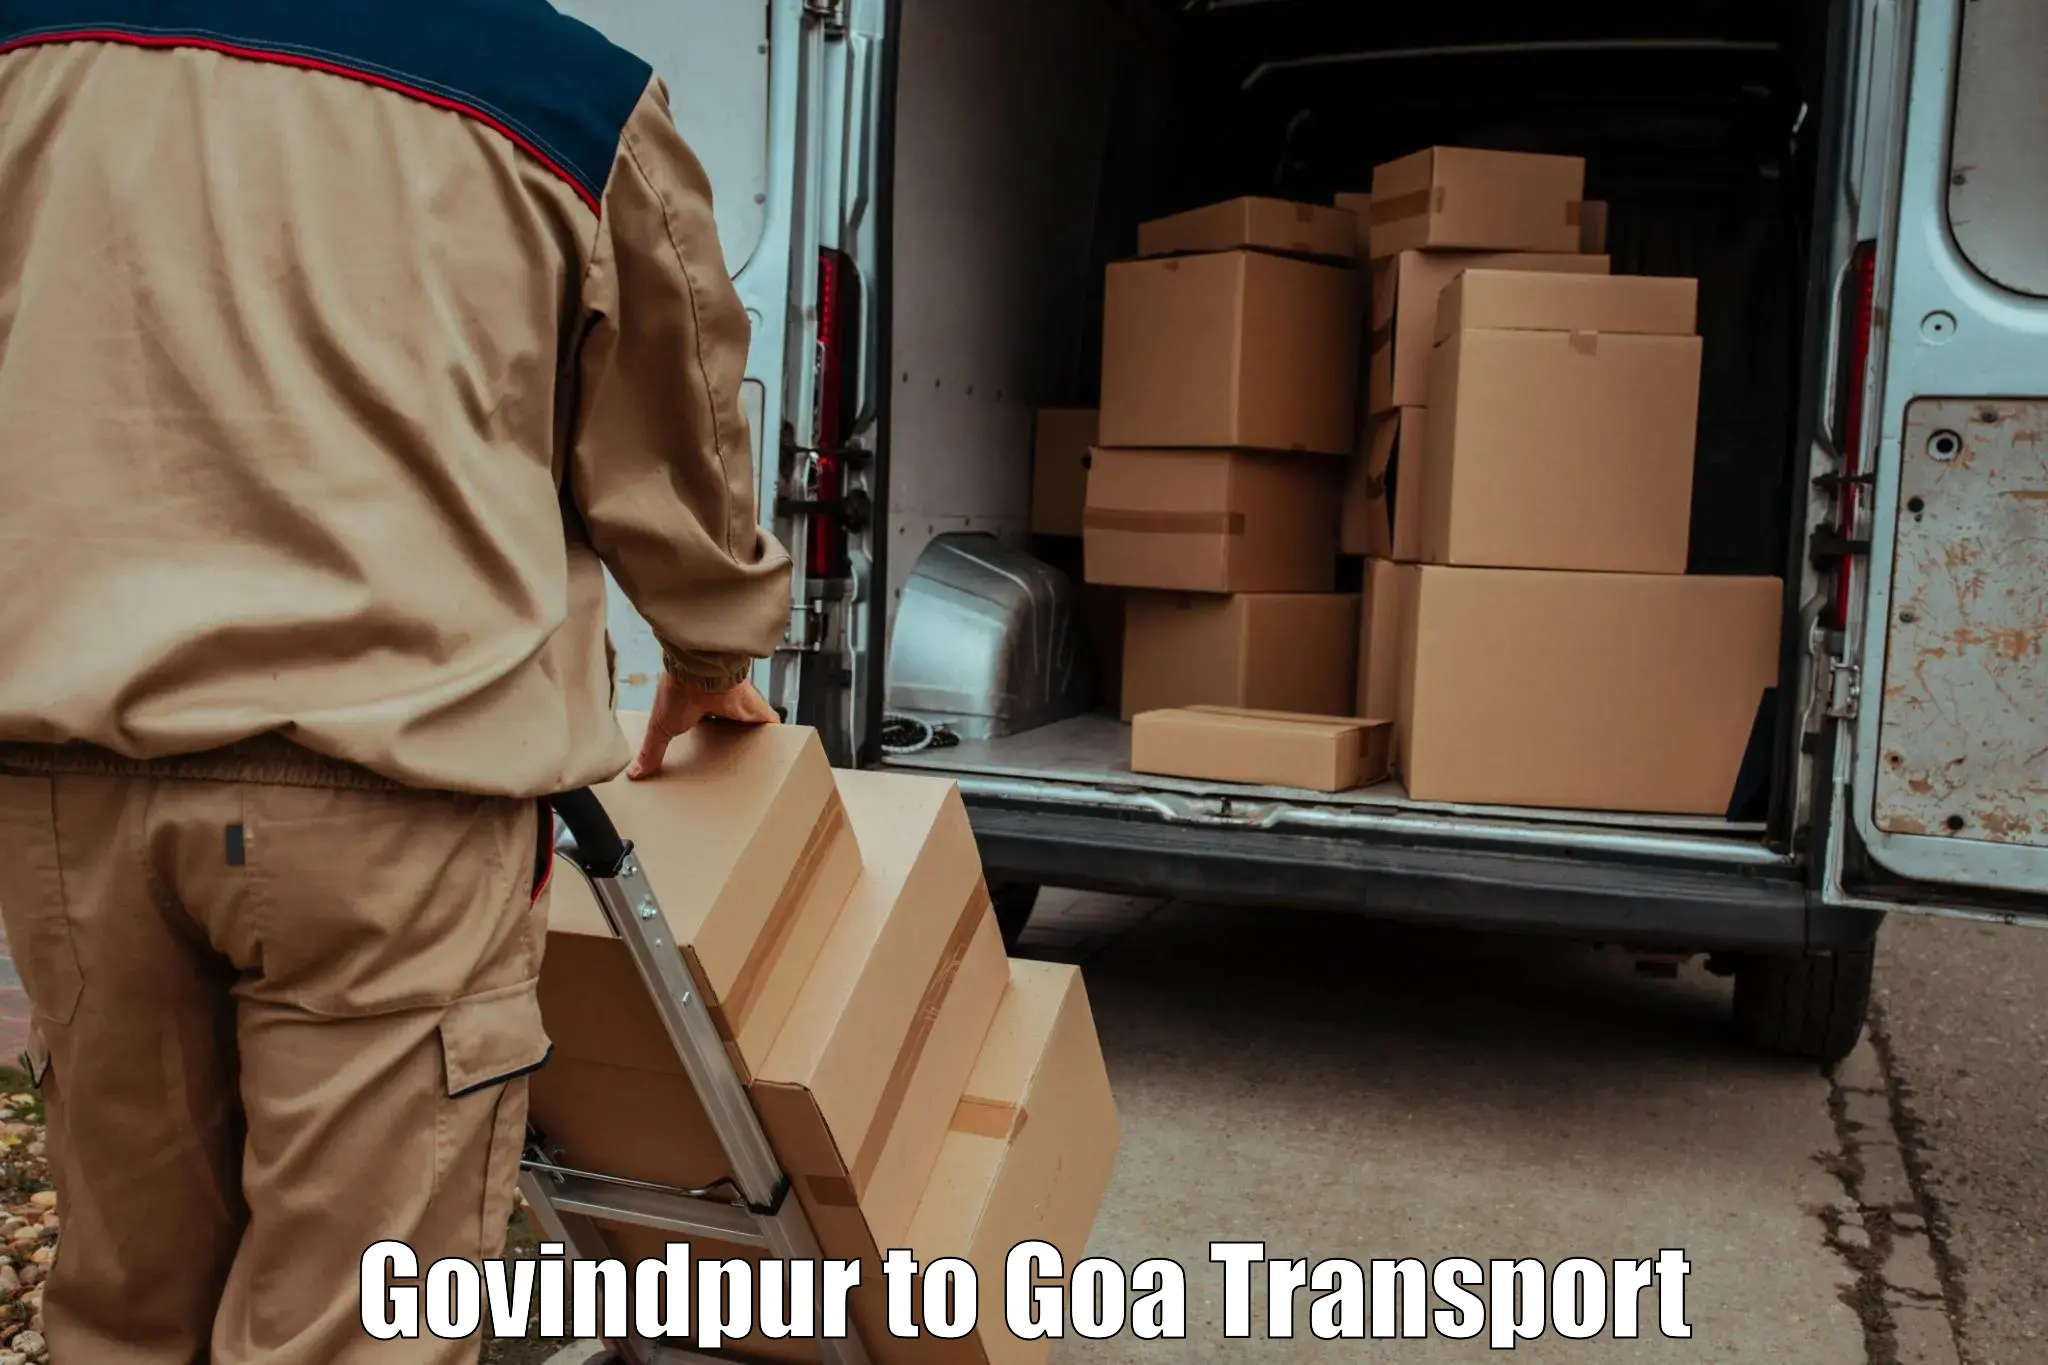 Pick up transport service Govindpur to Mormugao Port